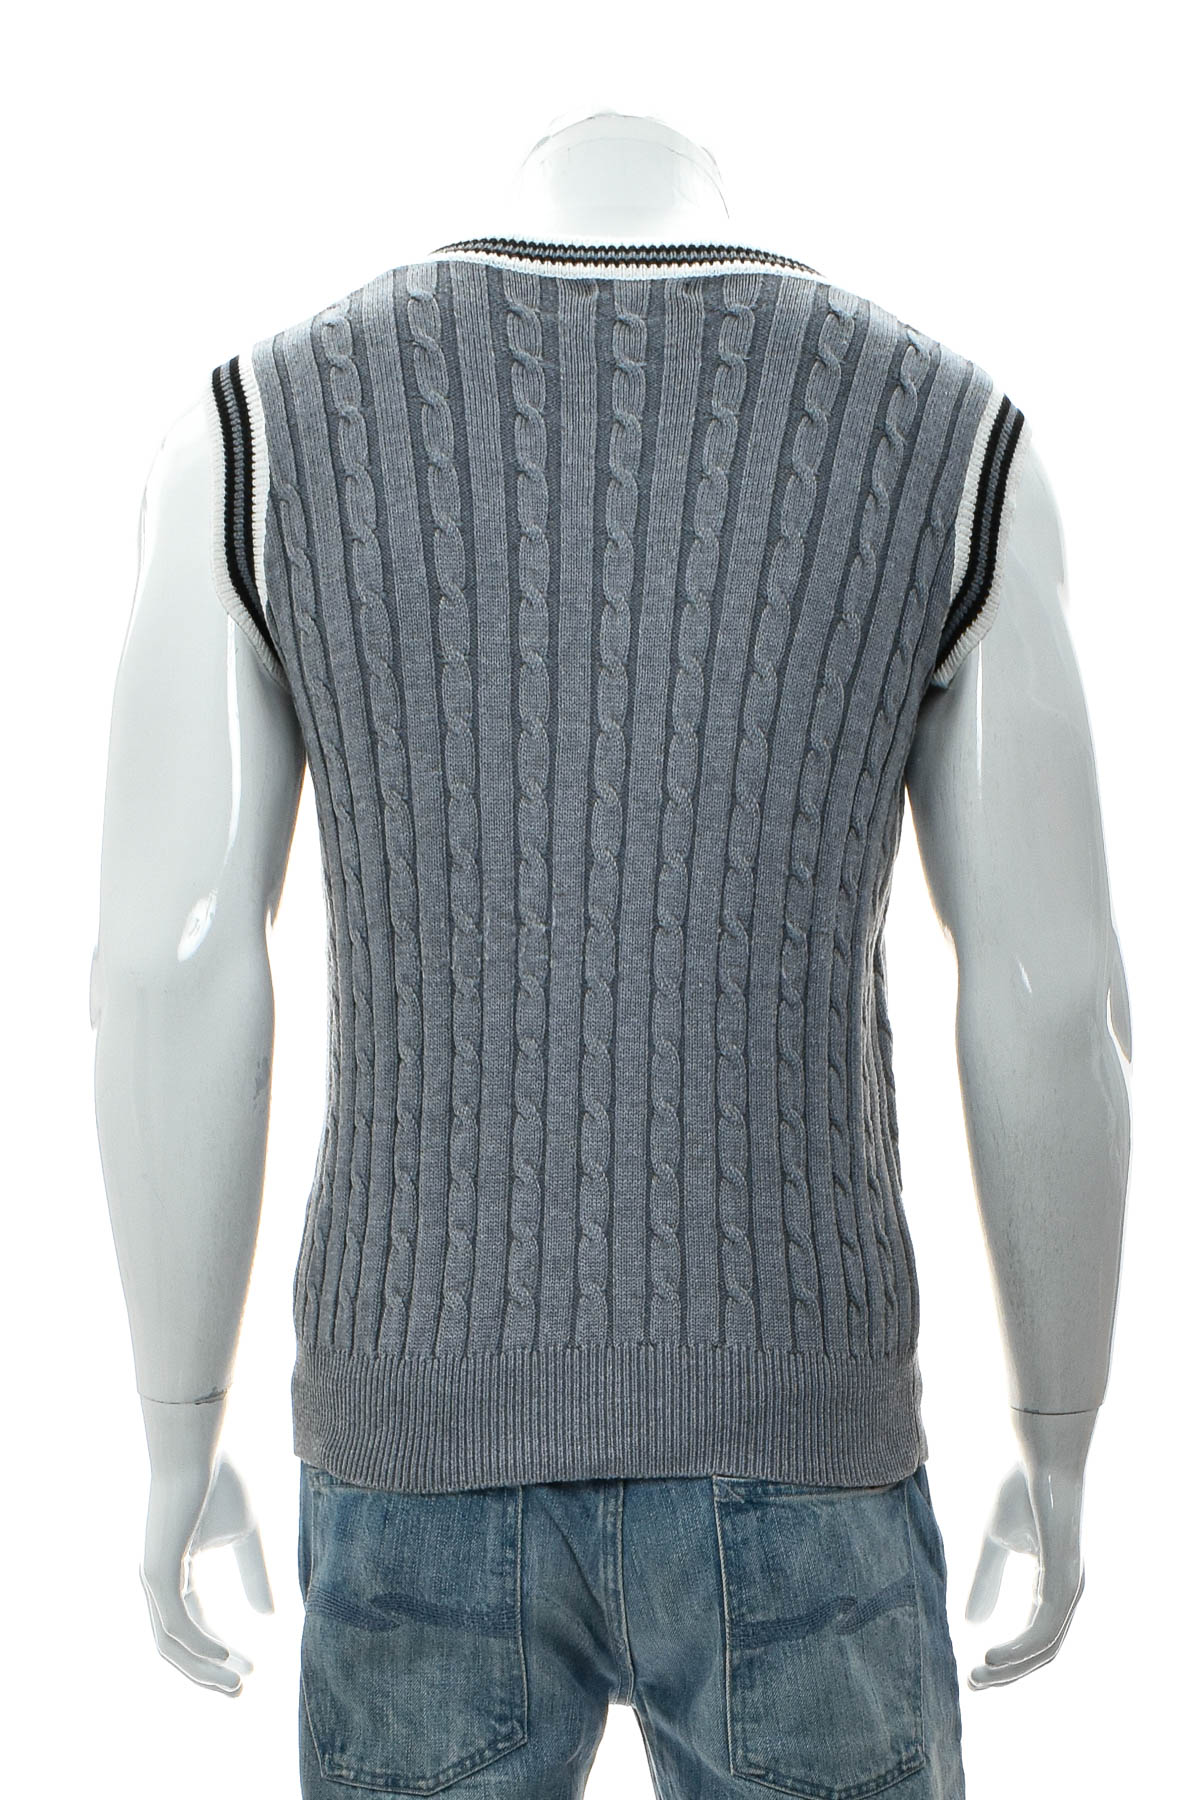 Men's sweater - COOFANDY - 1